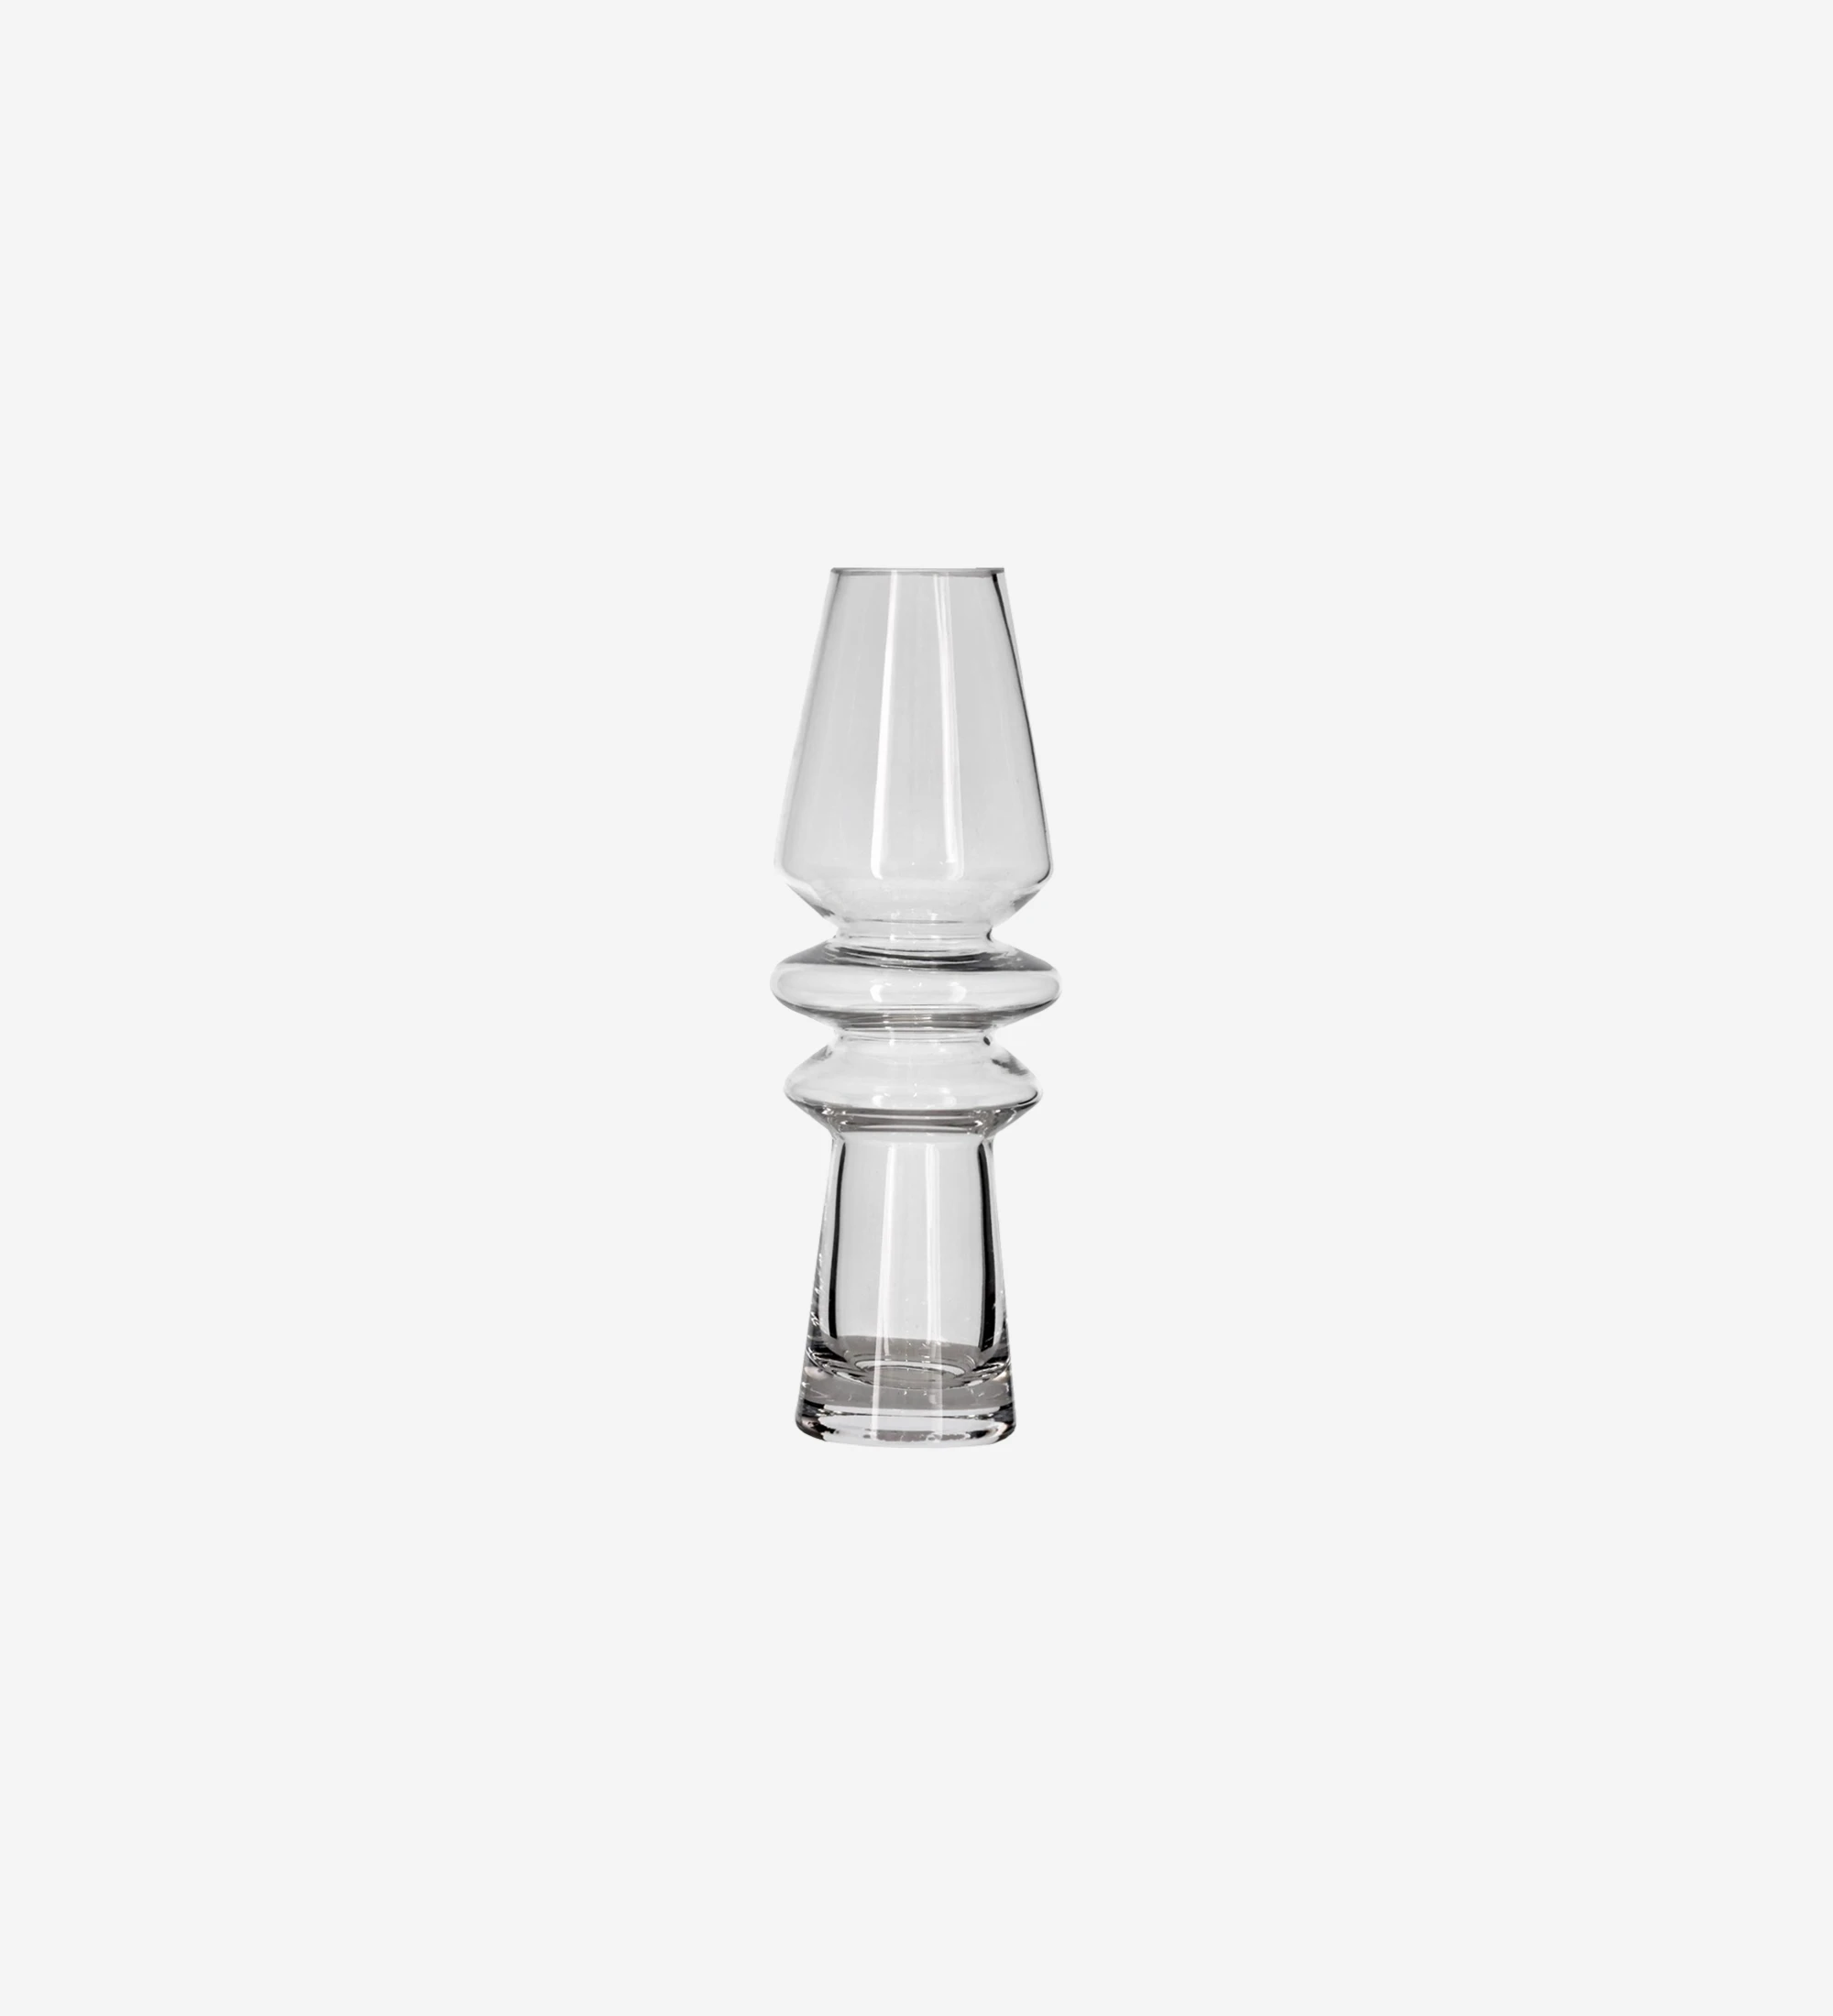 Jarrón de cristal transparente, impresionante forma escultórica que combina fácilmente con tu decoración.